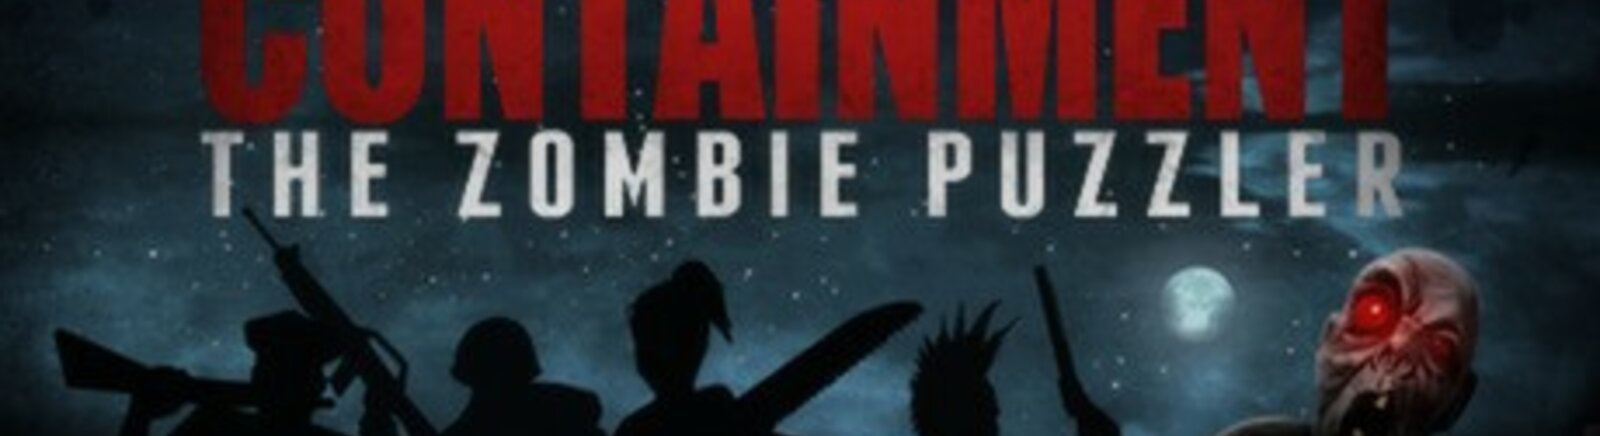 Дата выхода Containment: The Zombie Puzzler  на PC, iOS и Mac в России и во всем мире